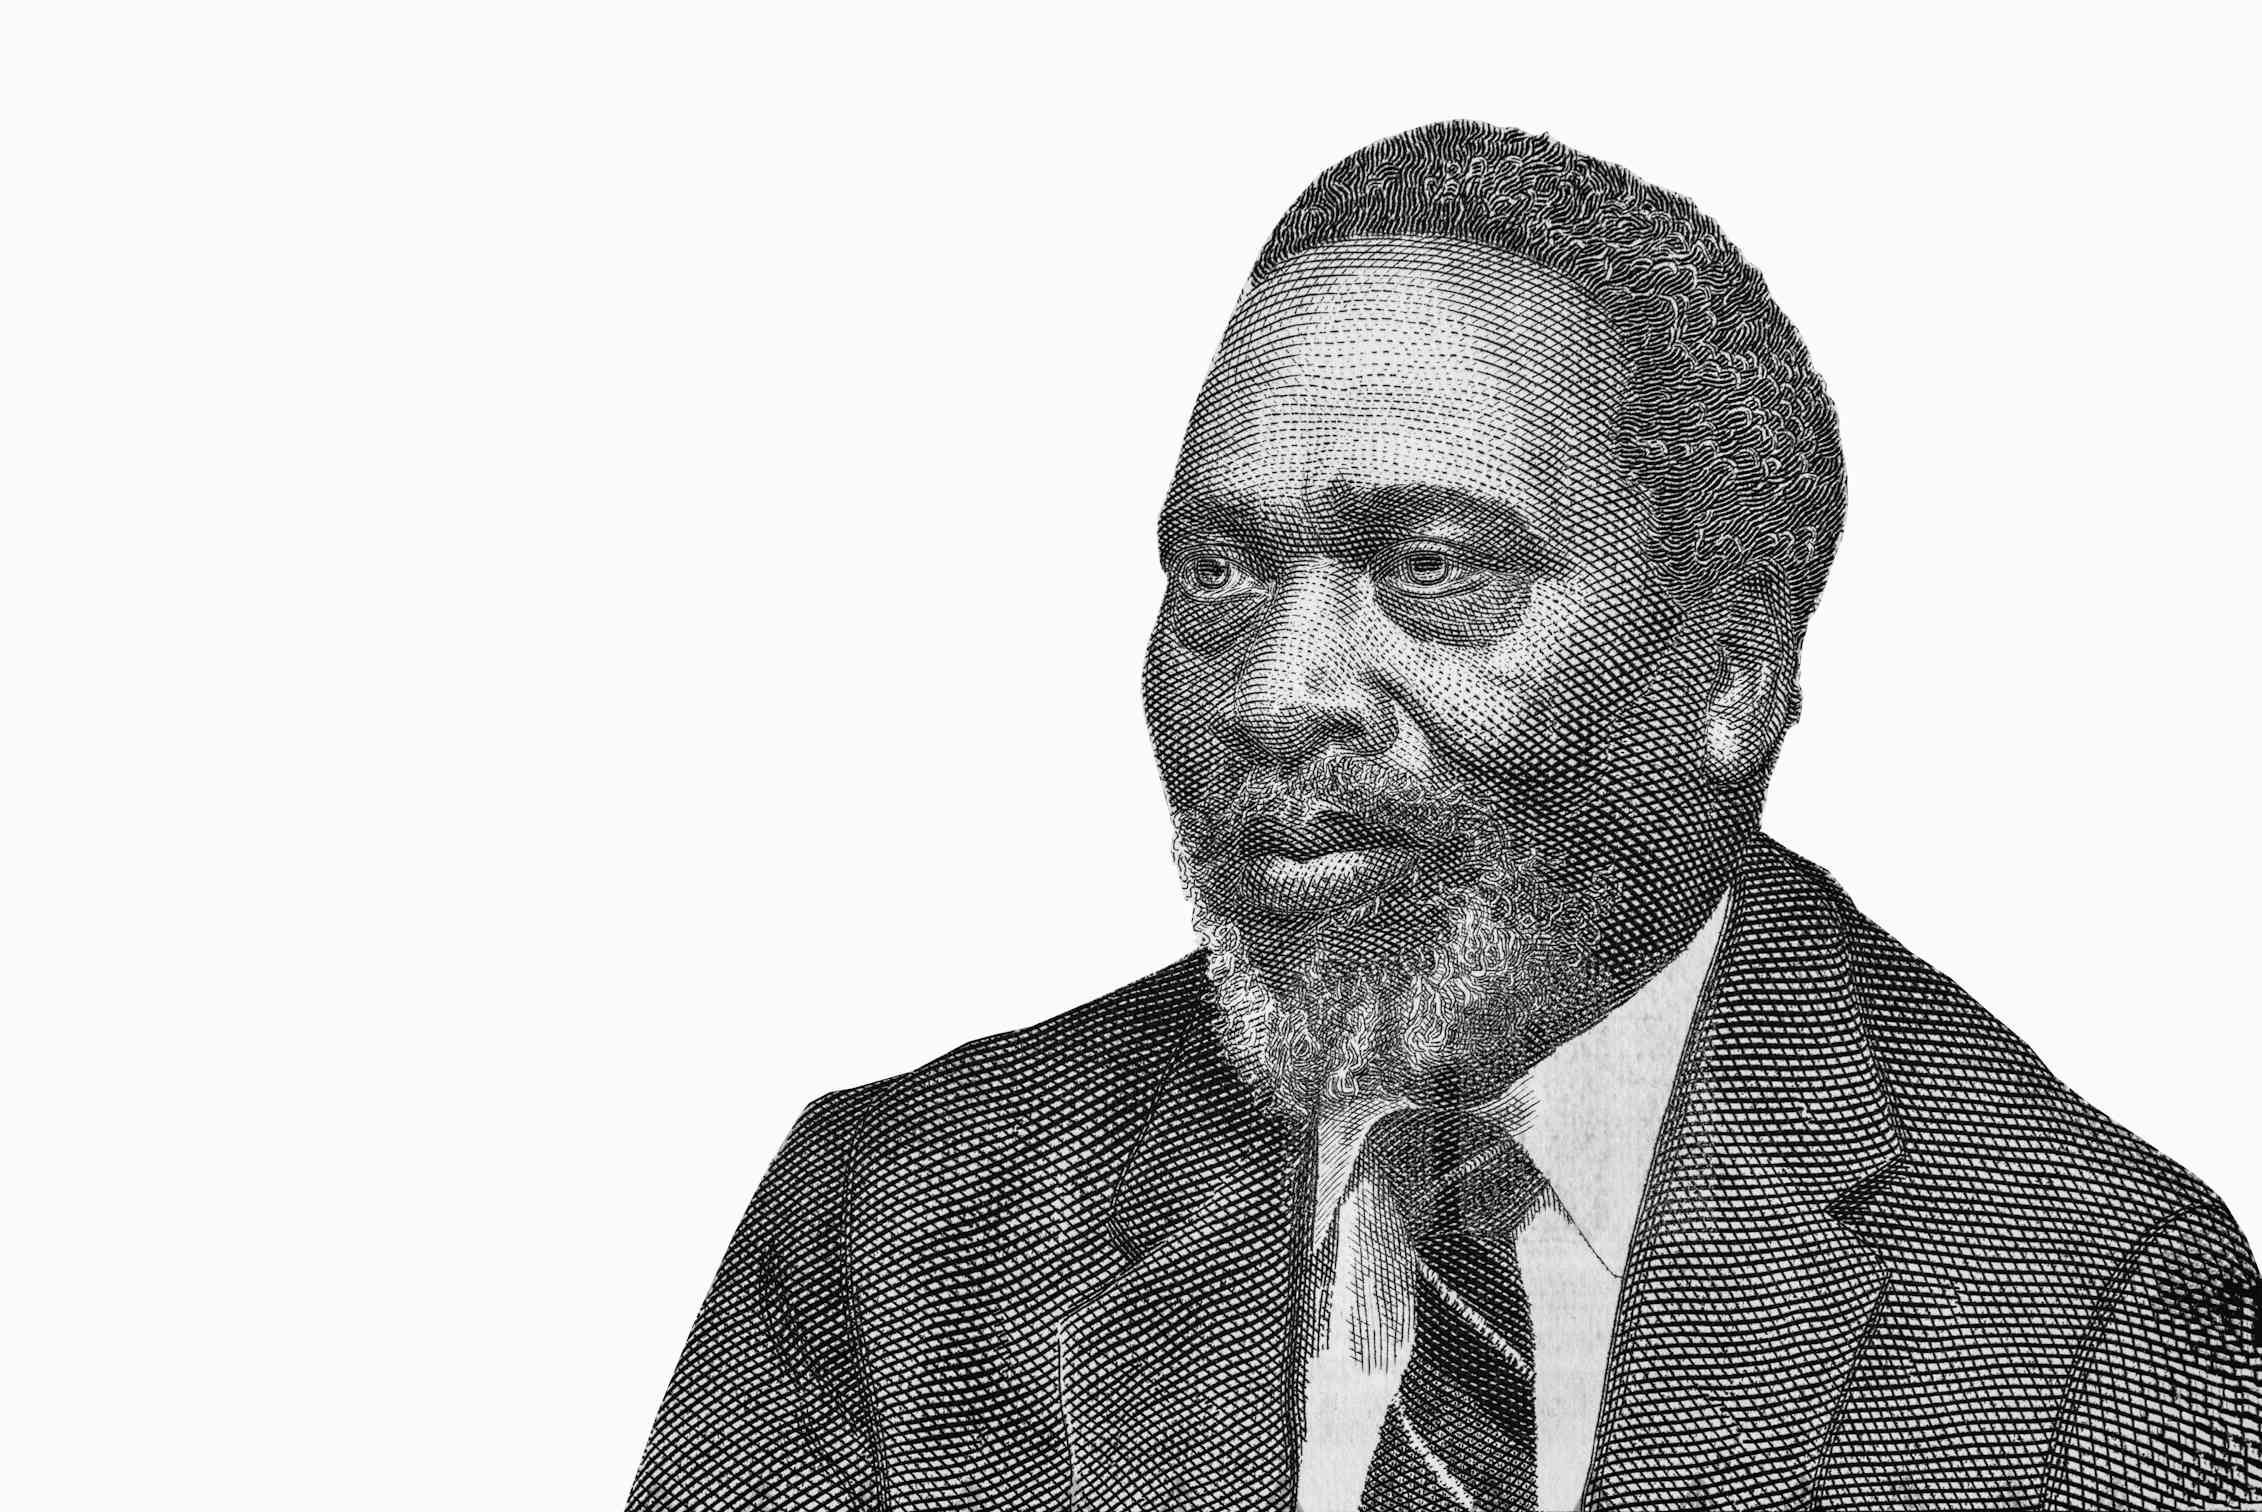 Retrato del primer presidente y padre fundador de Kenia Jomo Kenyatta (a partir de los billetes de banco). Shutterstock / Prachaya Roekdeethaweesab